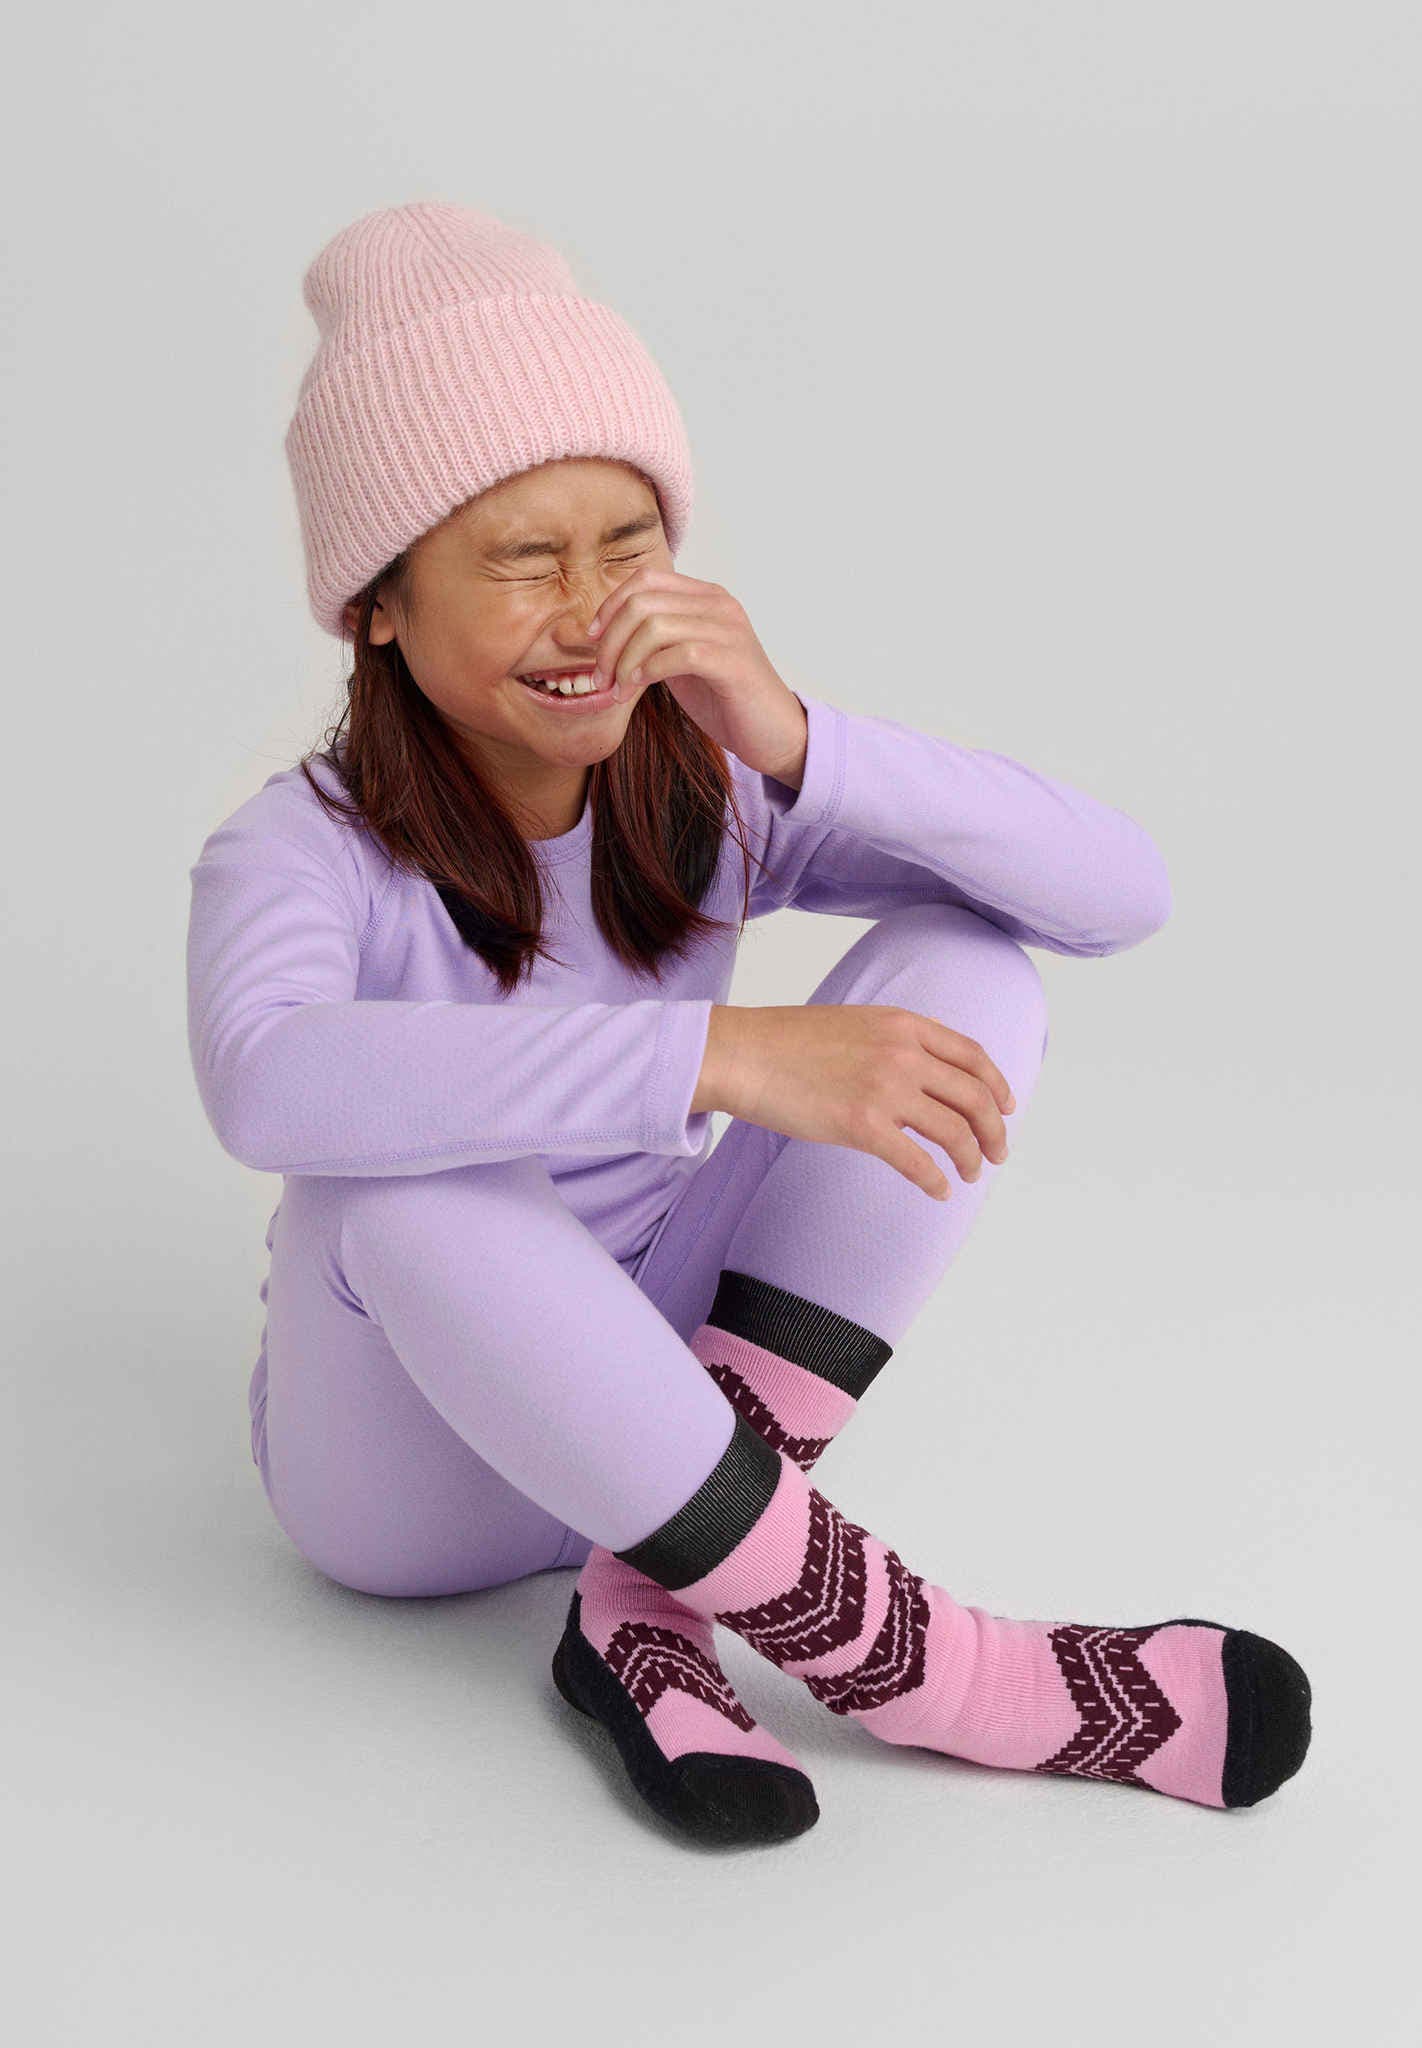 Girls' Winter Leggings, Fleece, Thermal & Knitted